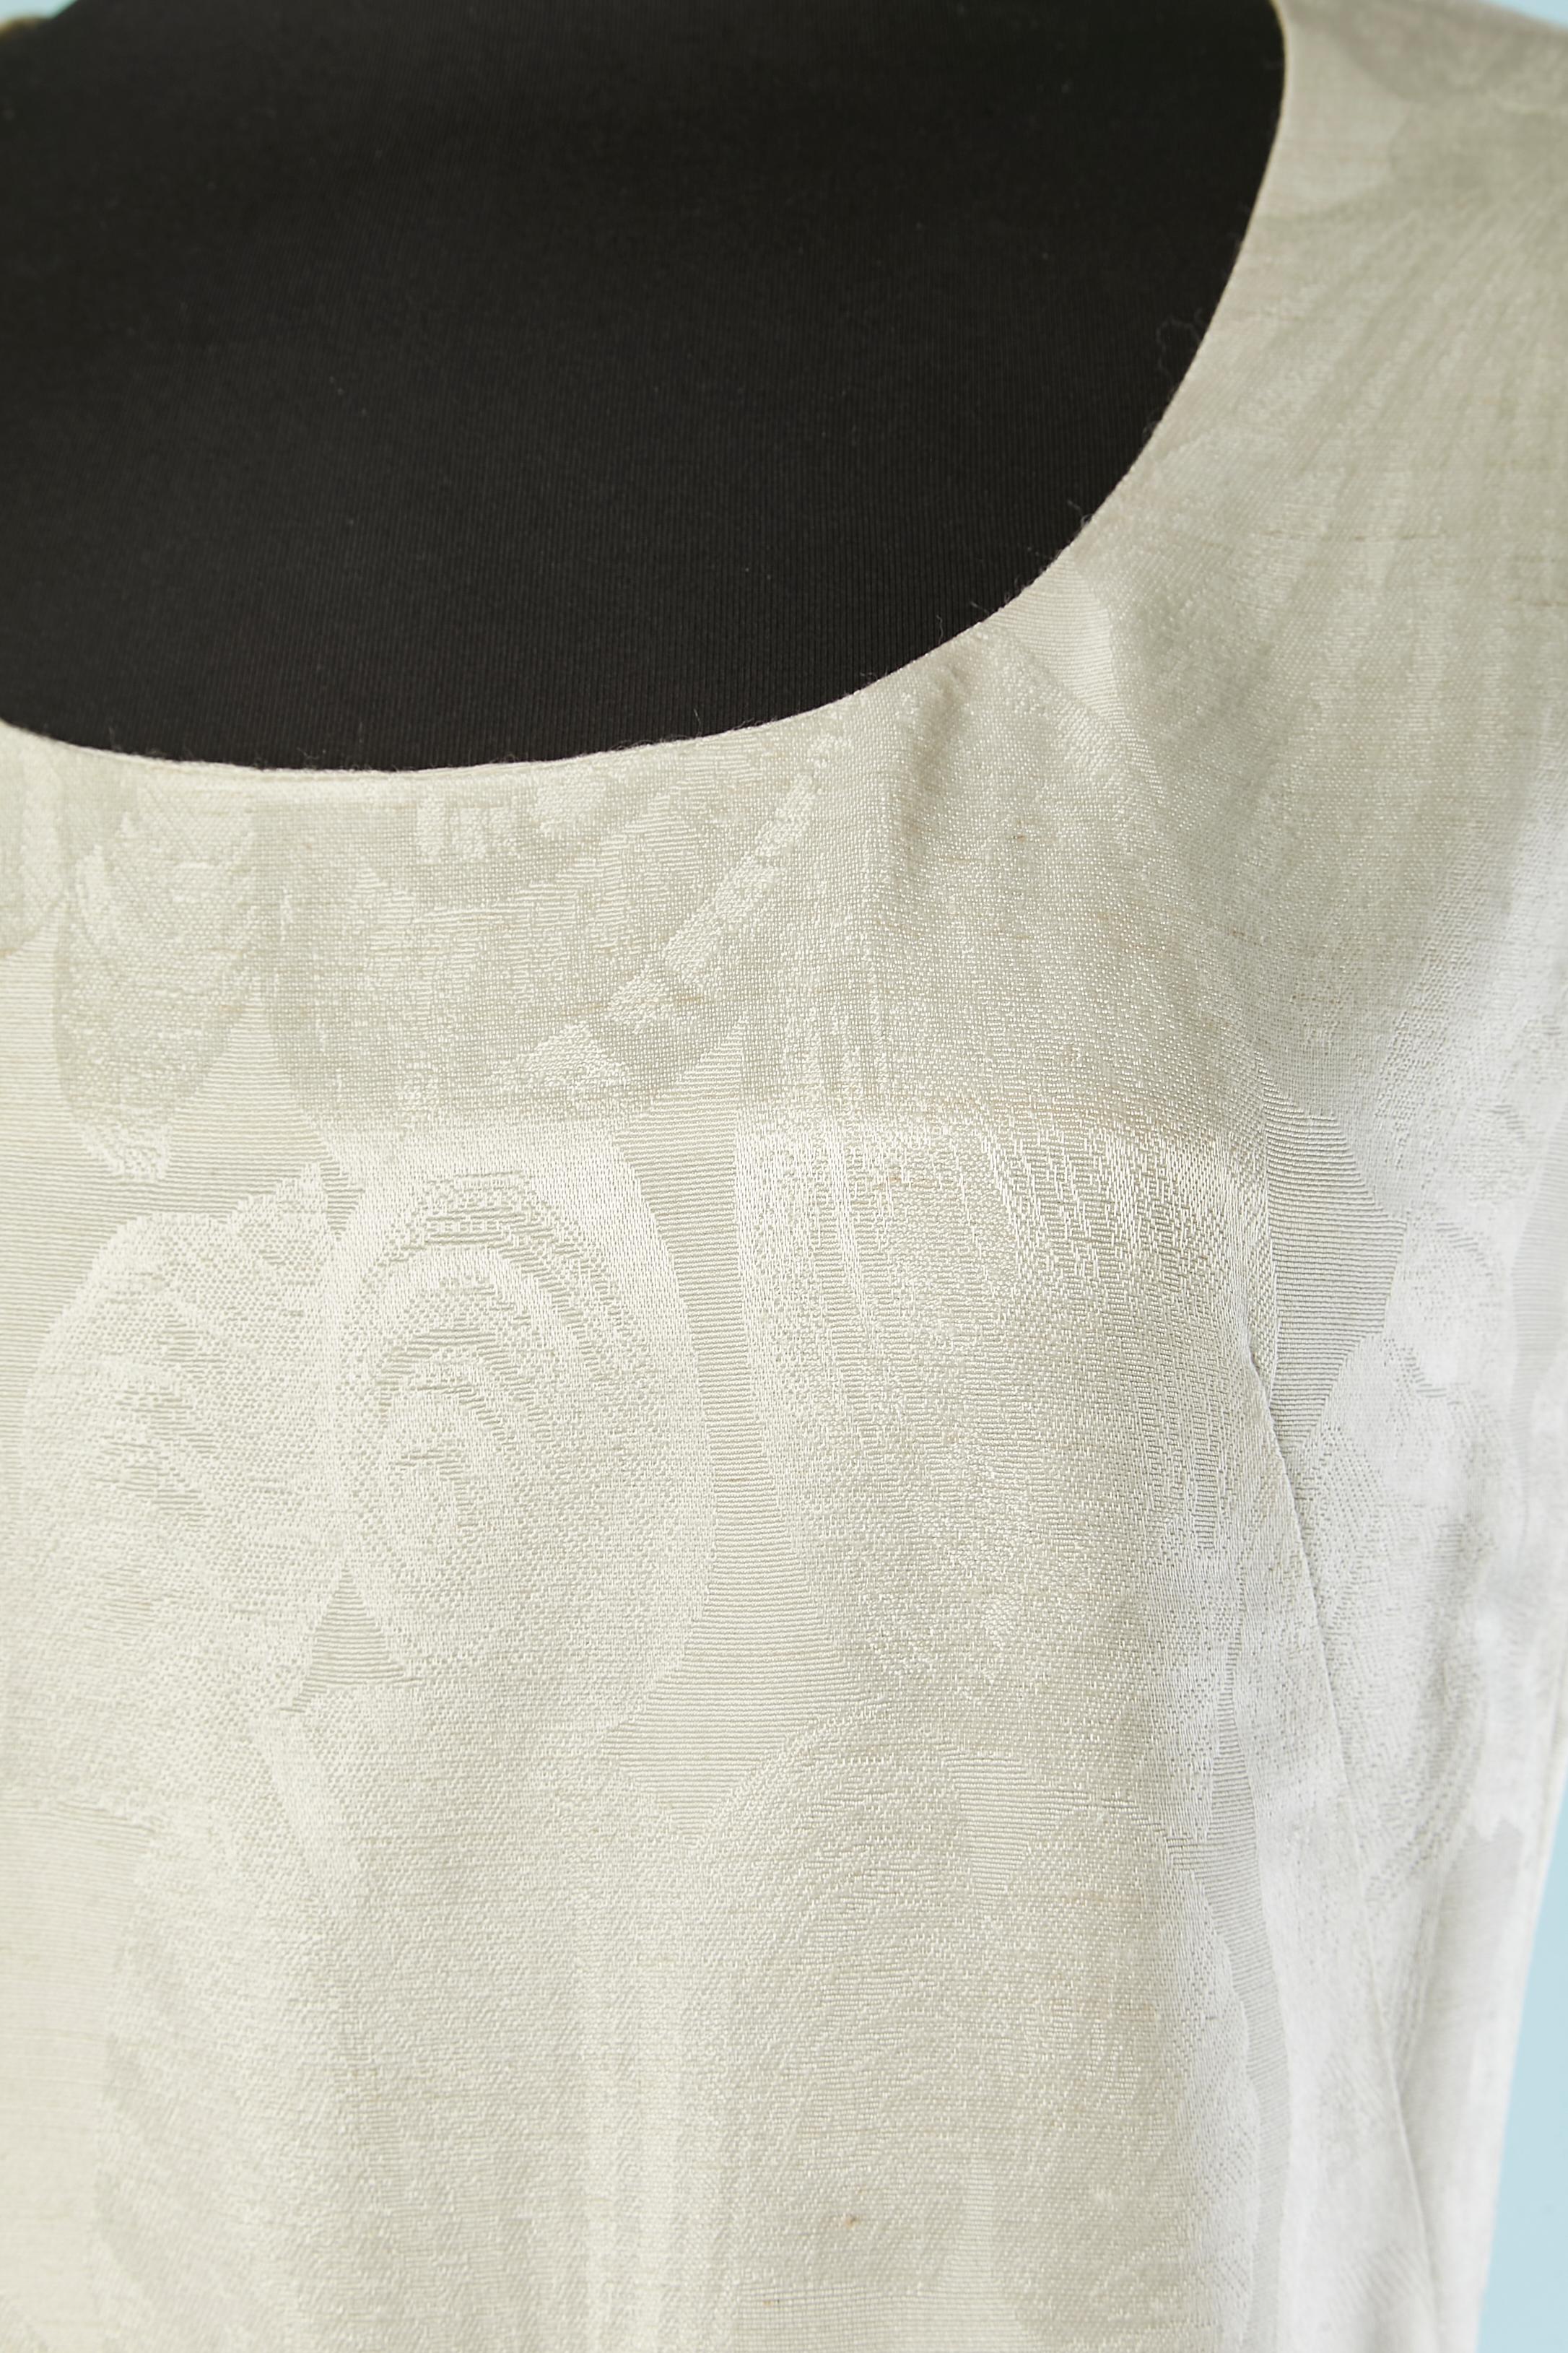 Weißes ärmelloses Seidenjacquard-Cocktailkleid (oder Hochzeitskleid) mit Muschelmuster. Reißverschluss in der Mitte des Rückens + Haken & Ösen. 
Seidenfutter. Könnte ein Ausstellungs- oder Handelsmuster sein, da es nummeriert ist. ( 923-R1)
Größe 34